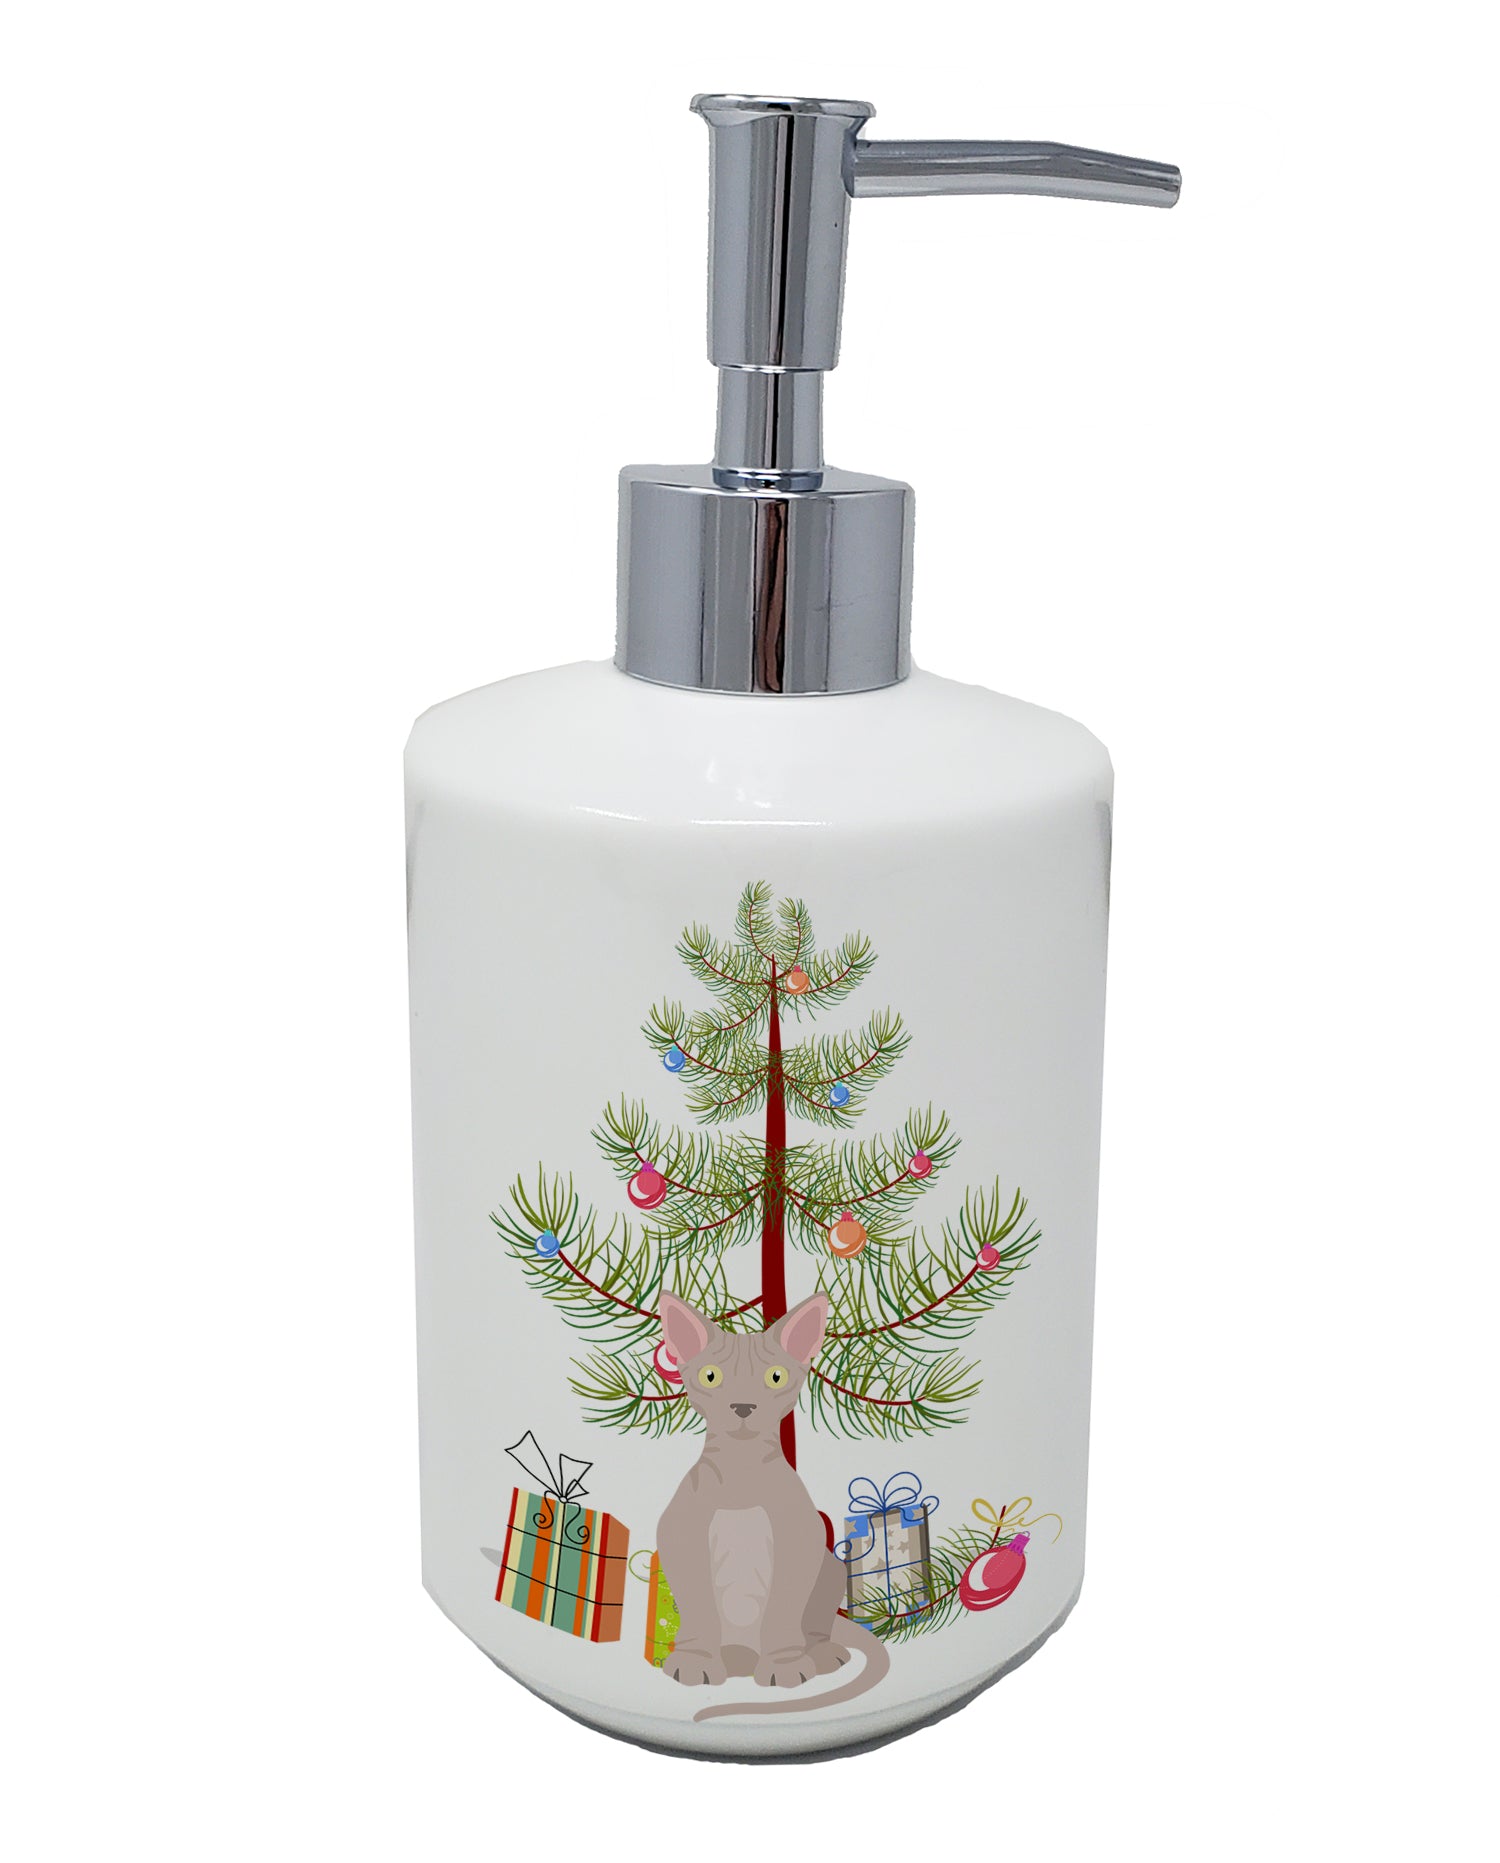 Buy this Minskin Cat Merry Christmas Ceramic Soap Dispenser